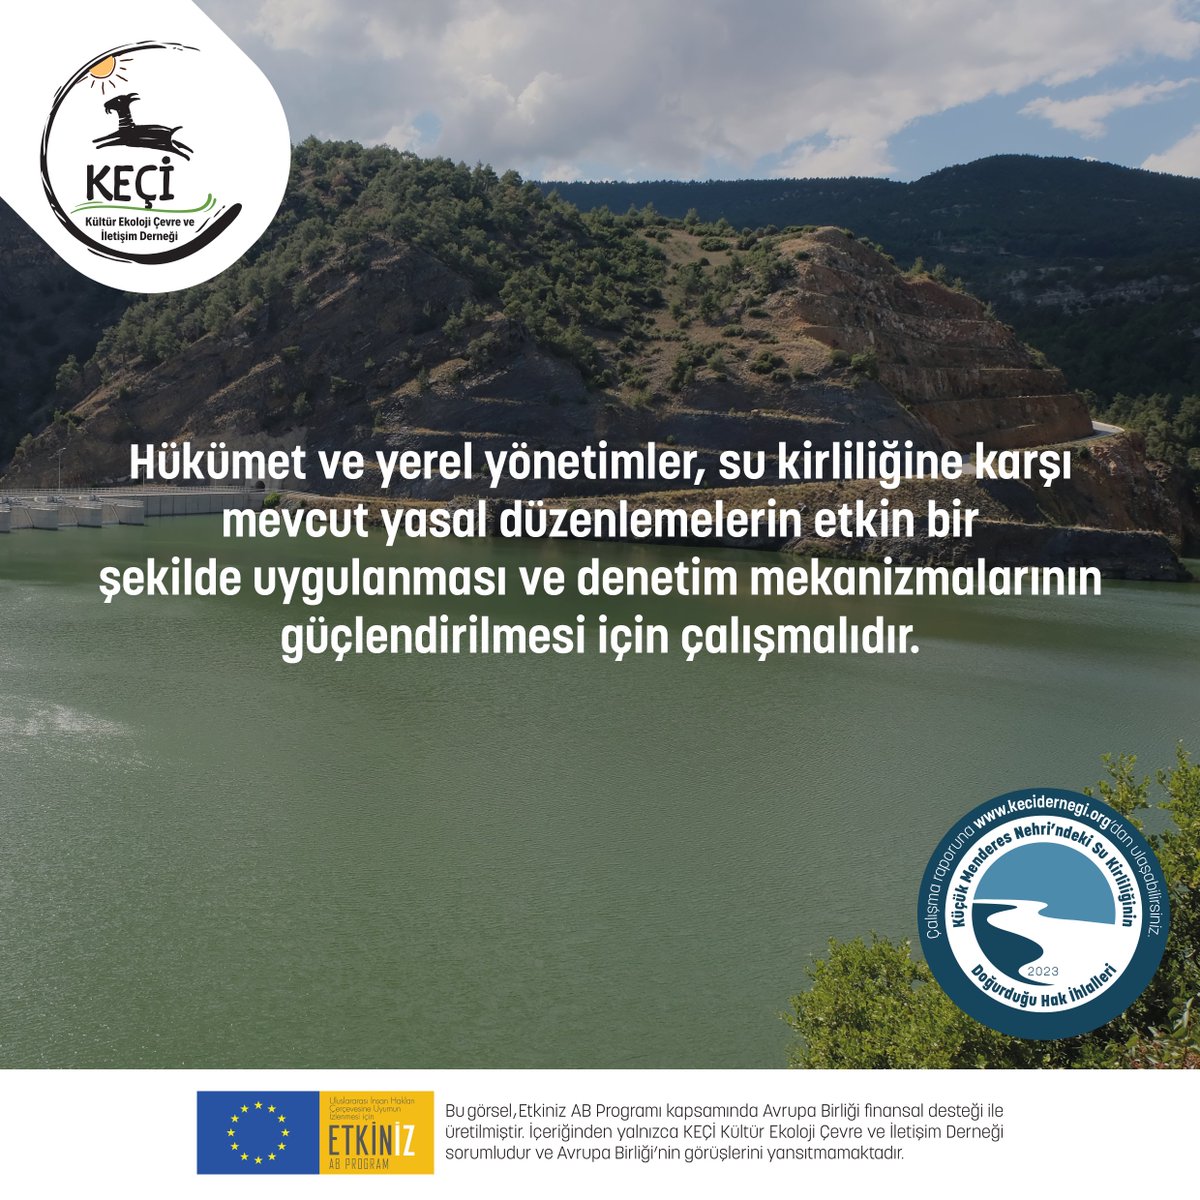 Küçük Menderes Nehri’ndeki kirliliğinin doğurduğu hak ihlallerini izliyoruz: 💦Hükümet ve yerel yönetimler, su kirliliğine karşı mevcut yasal düzenlemelerin etkin bir şekilde uygulanması ve denetim mekanizmalarının güçlendirilmesi için çalışmalıdır. @etkinizab #küçükmenderes